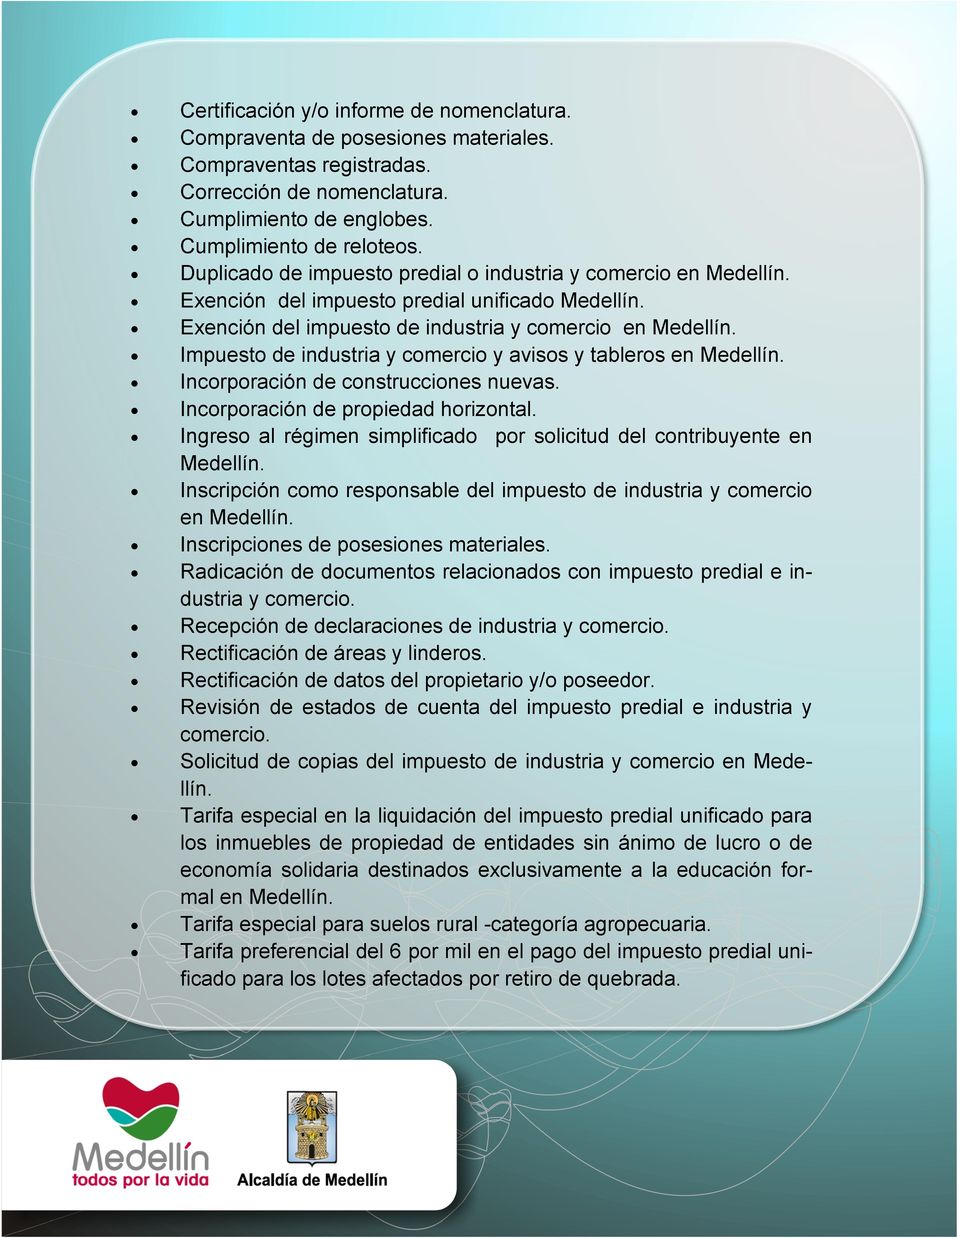 Impuesto de industria y comercio y avisos y tableros en Medellín. Incorporación de construcciones nuevas. Incorporación de propiedad horizontal.